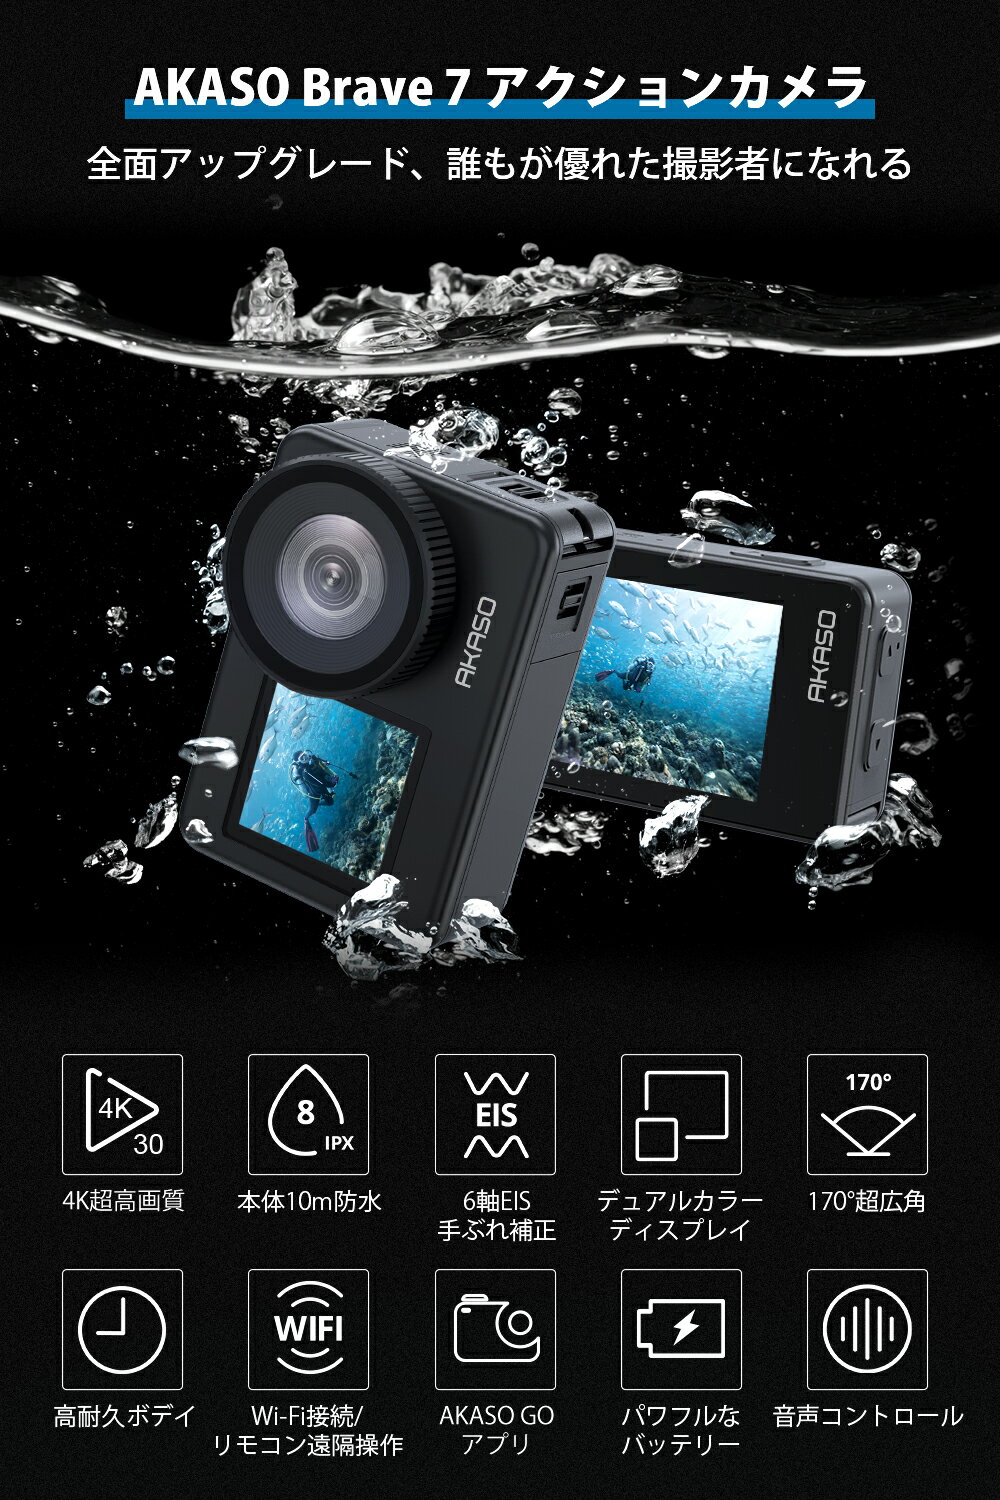 【音声制御機能 本体10M防水】アクションカメラ AKASO BRAVE 7 4K 20MP タッチパネル式 ウェアラブルカメラ 6軸手ぶれ補正 IPX8防水 水中カメラ WiFi アクションカム リモコン付き 1350mAhバッテリー2個